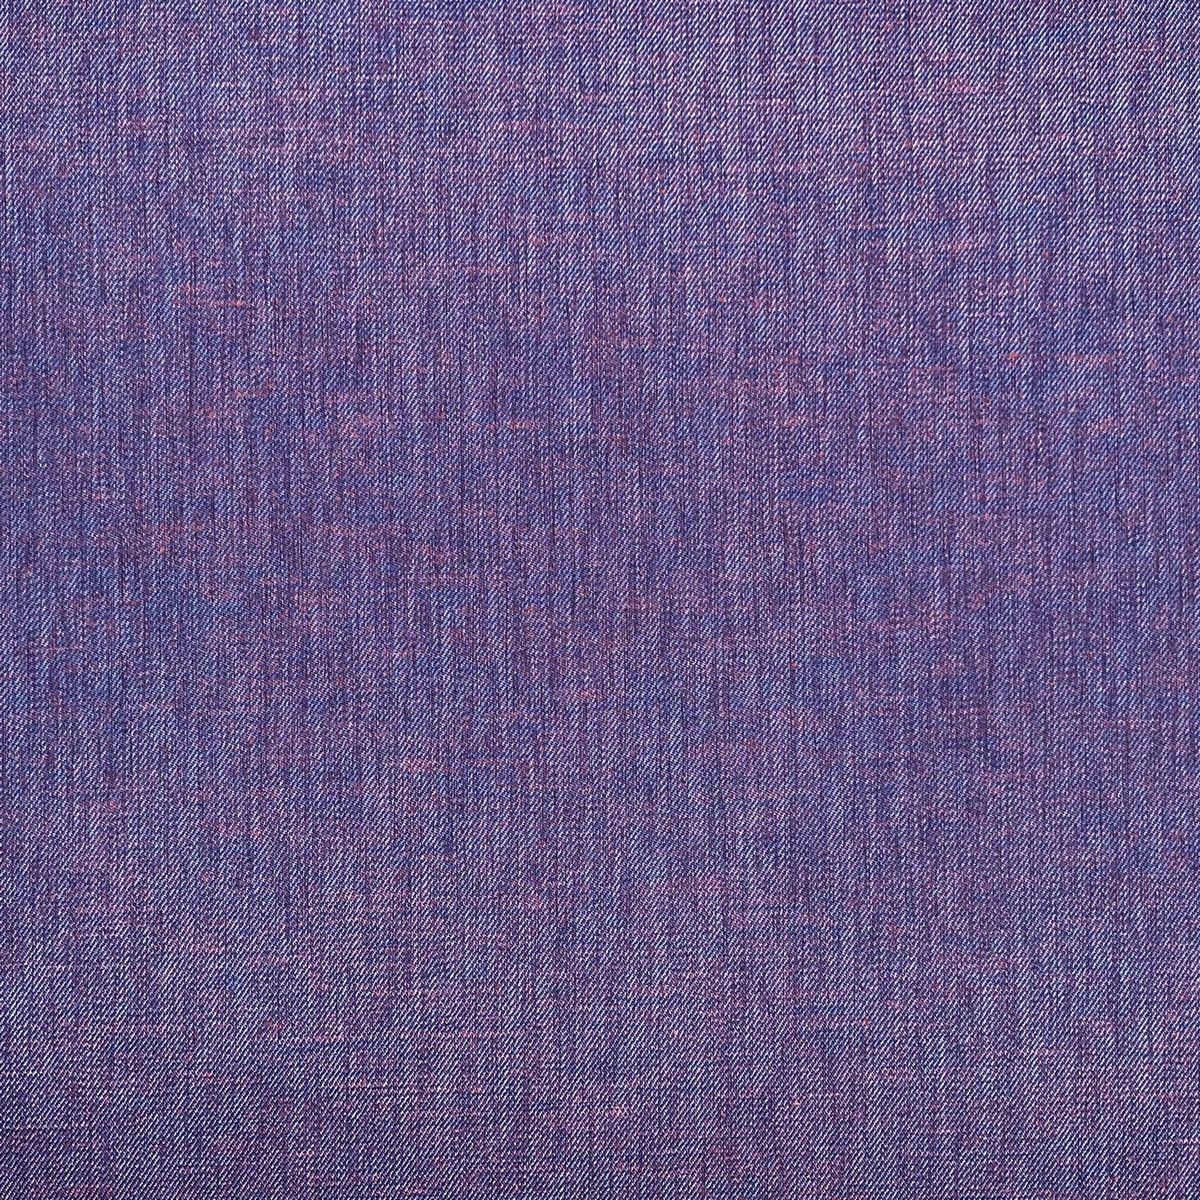 Moda Spectrum Blue Fabric by Chatham Glyn